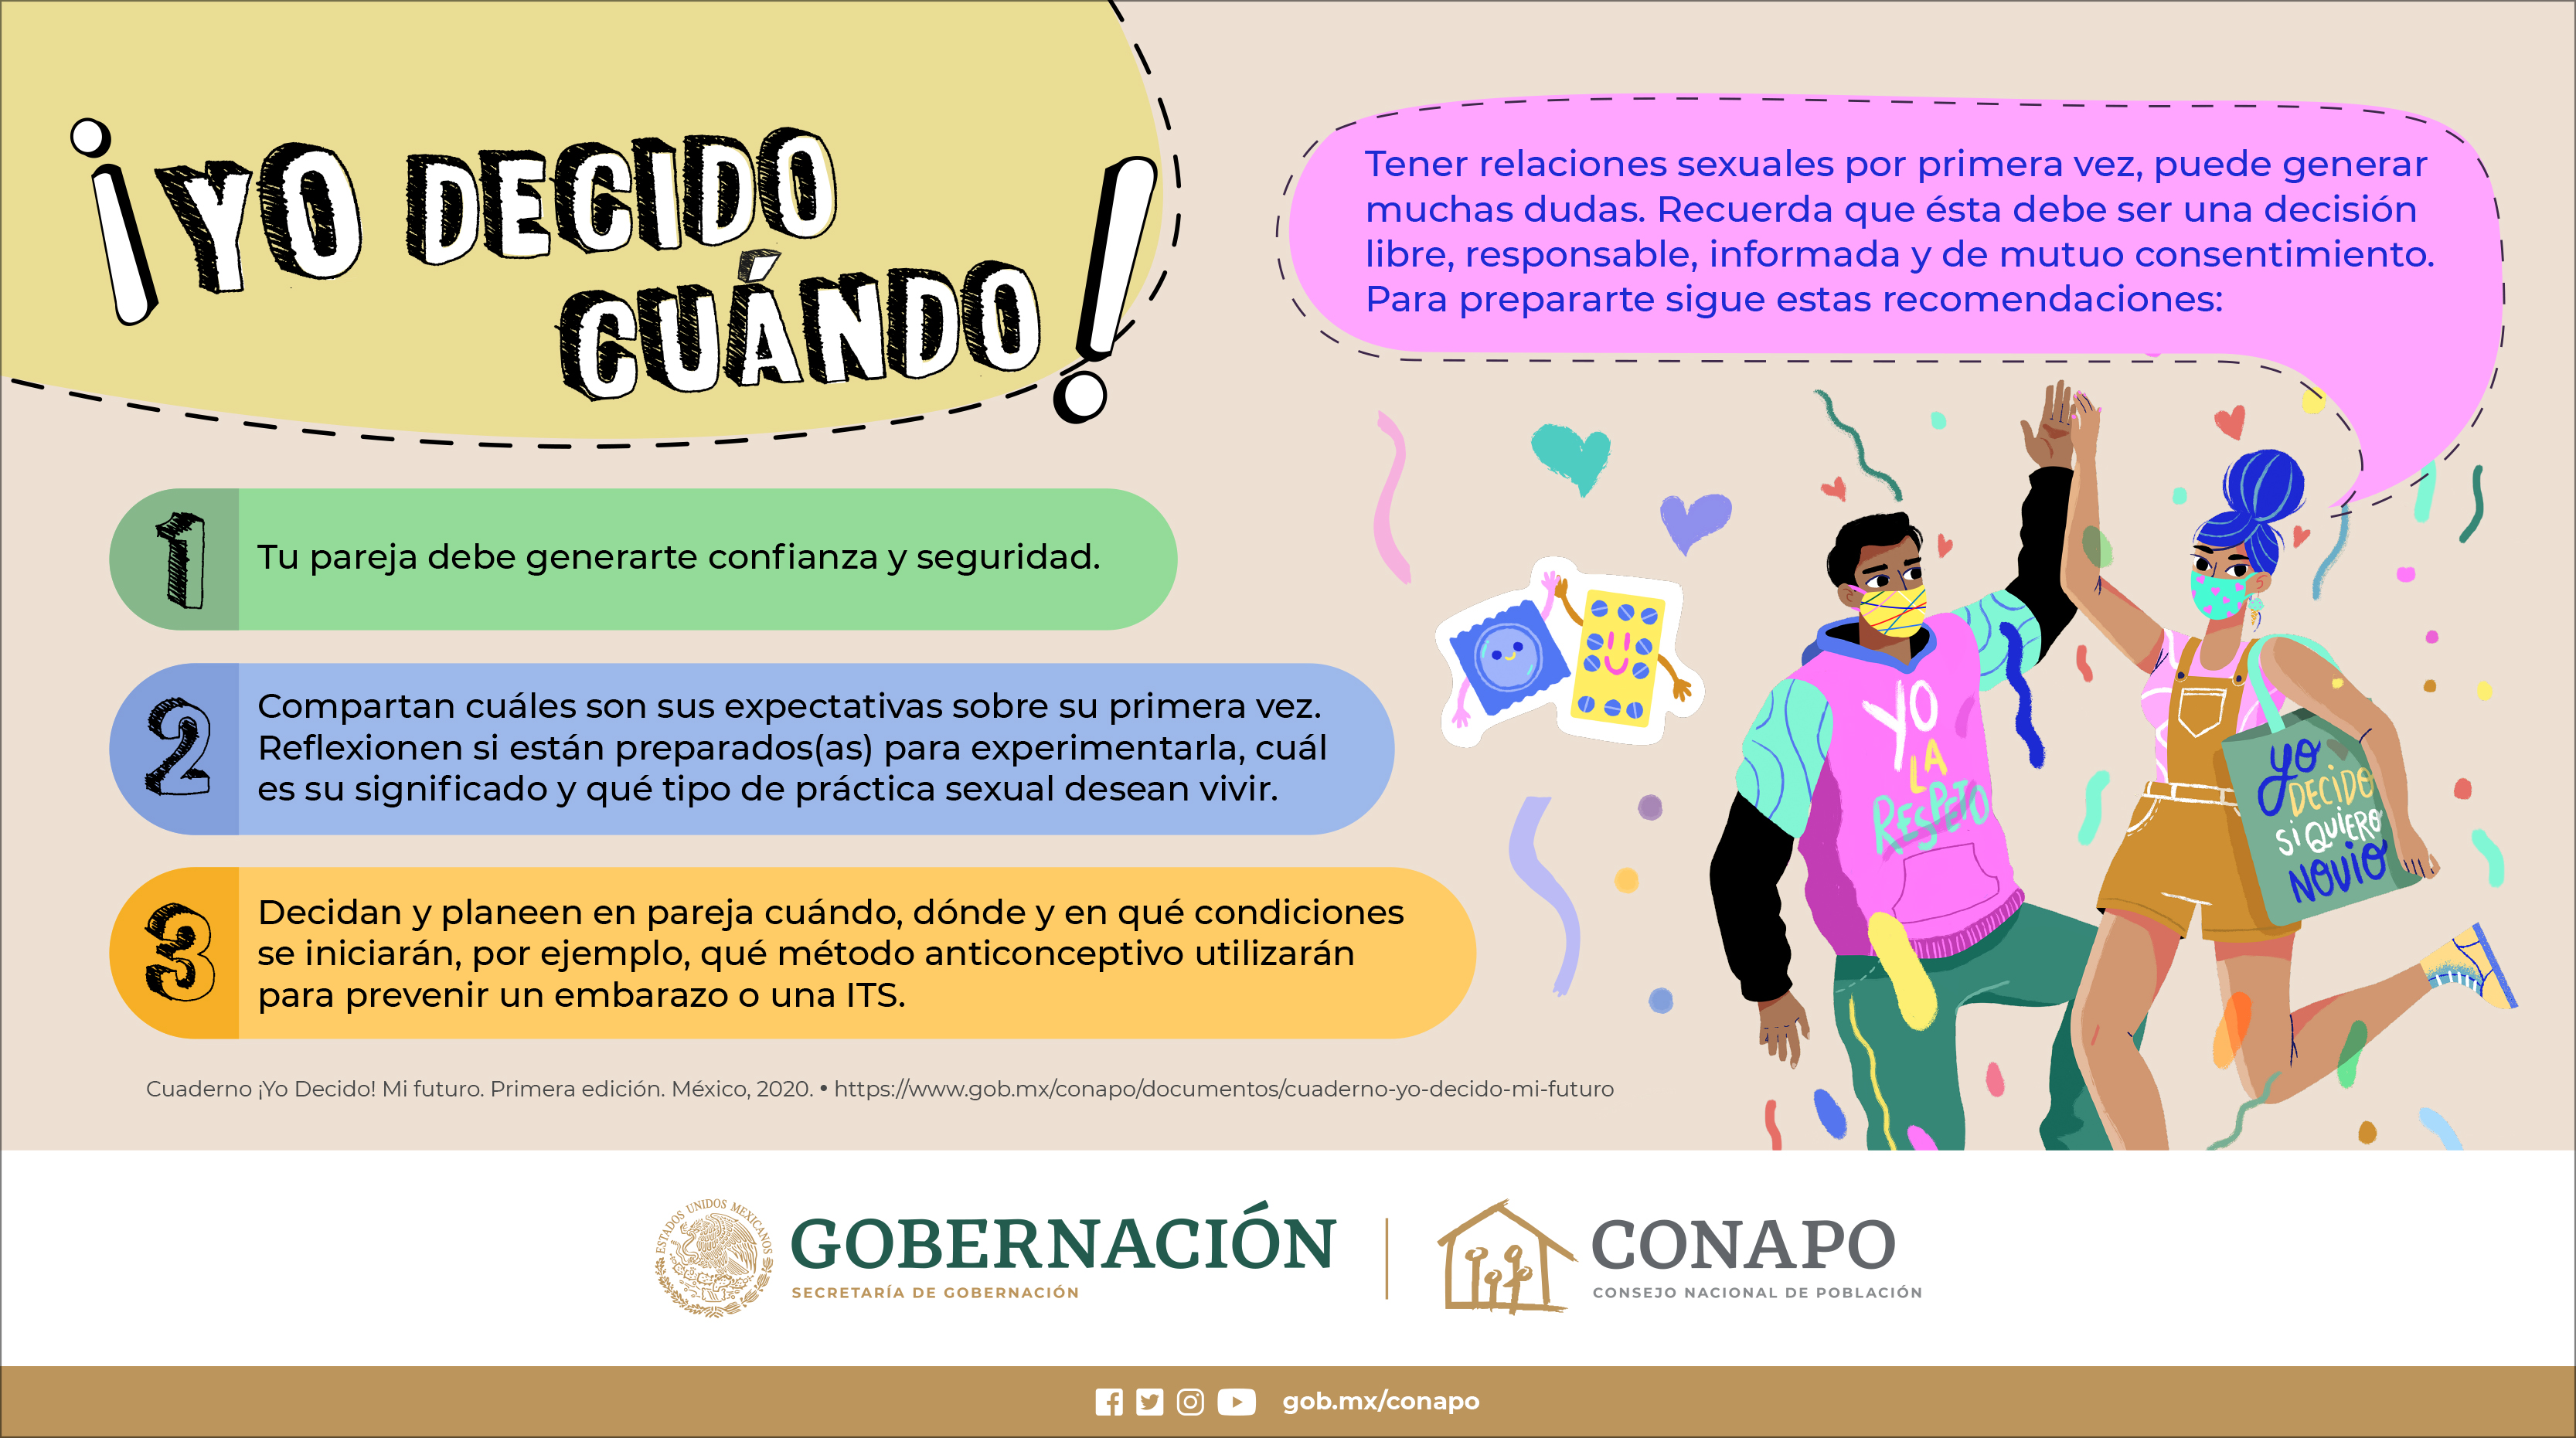 CONAPO - Consejo Nacional de Población on Twitter: 